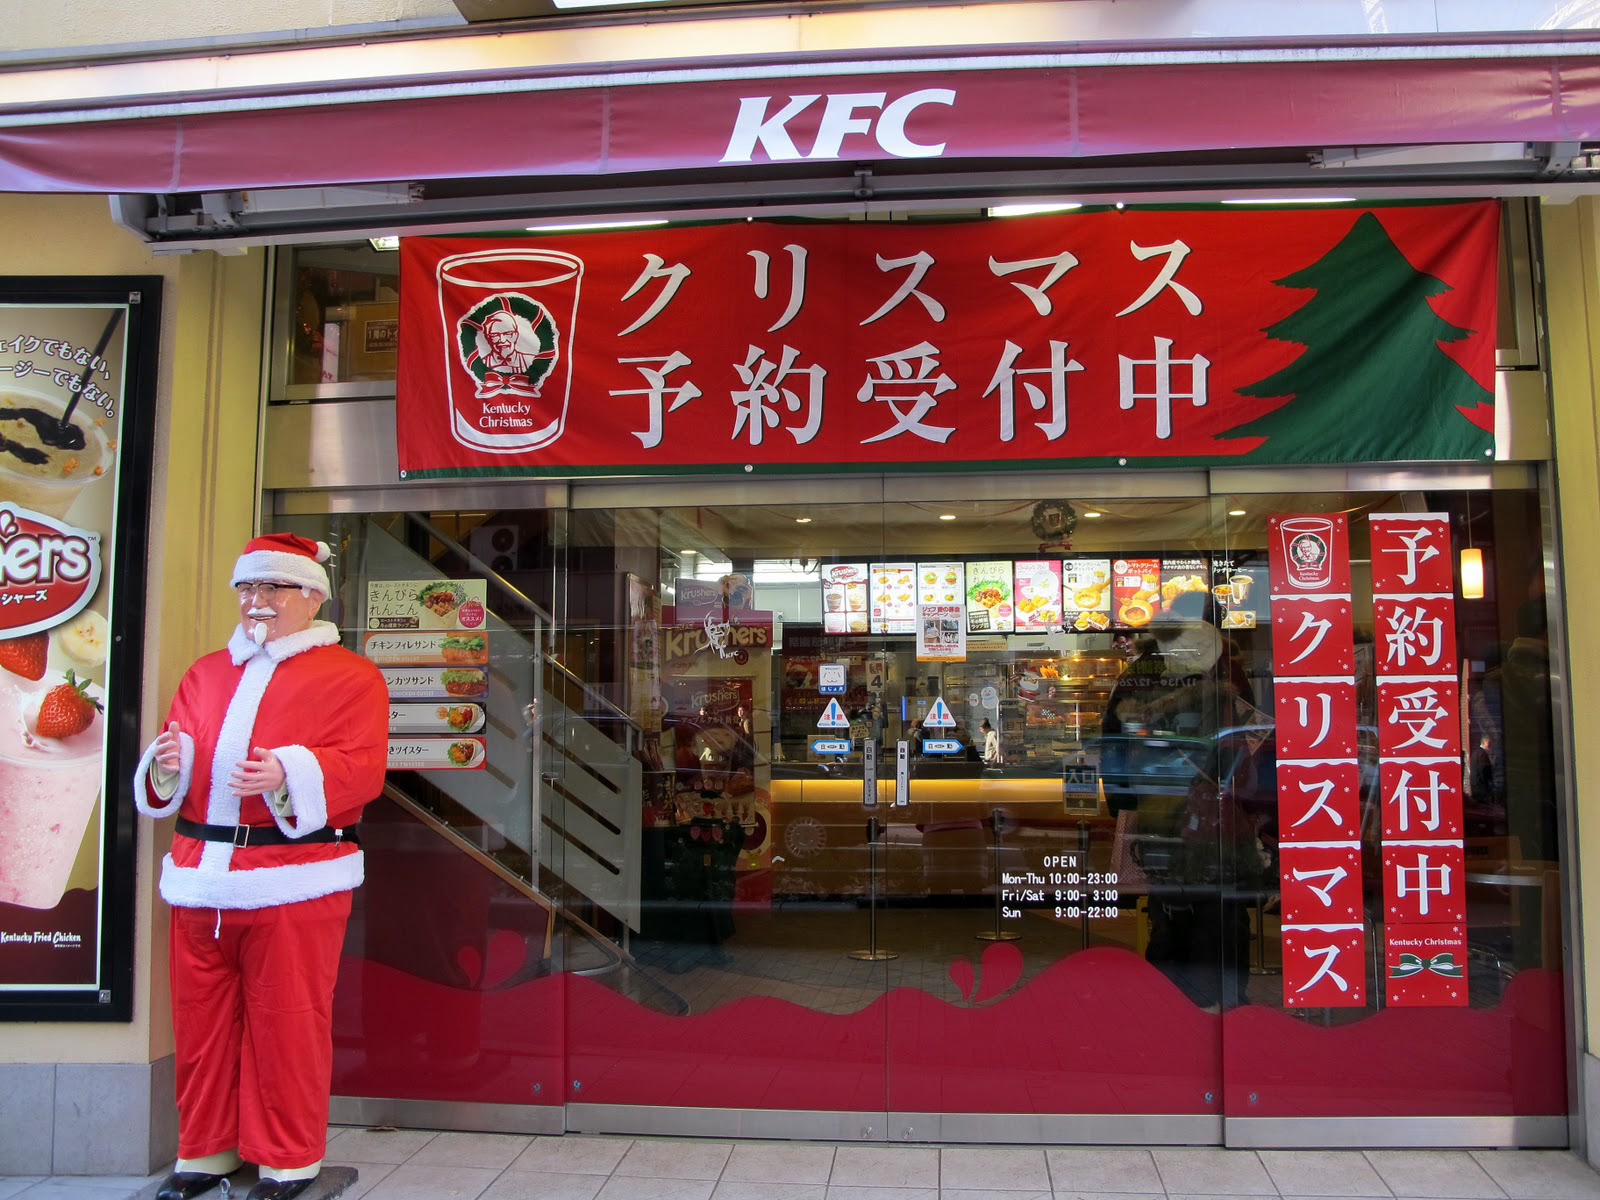 Cửa hàng gà rán KFC hoạt động xuyên suốt mùa lễ Giáng sinh tại Nhật Bản